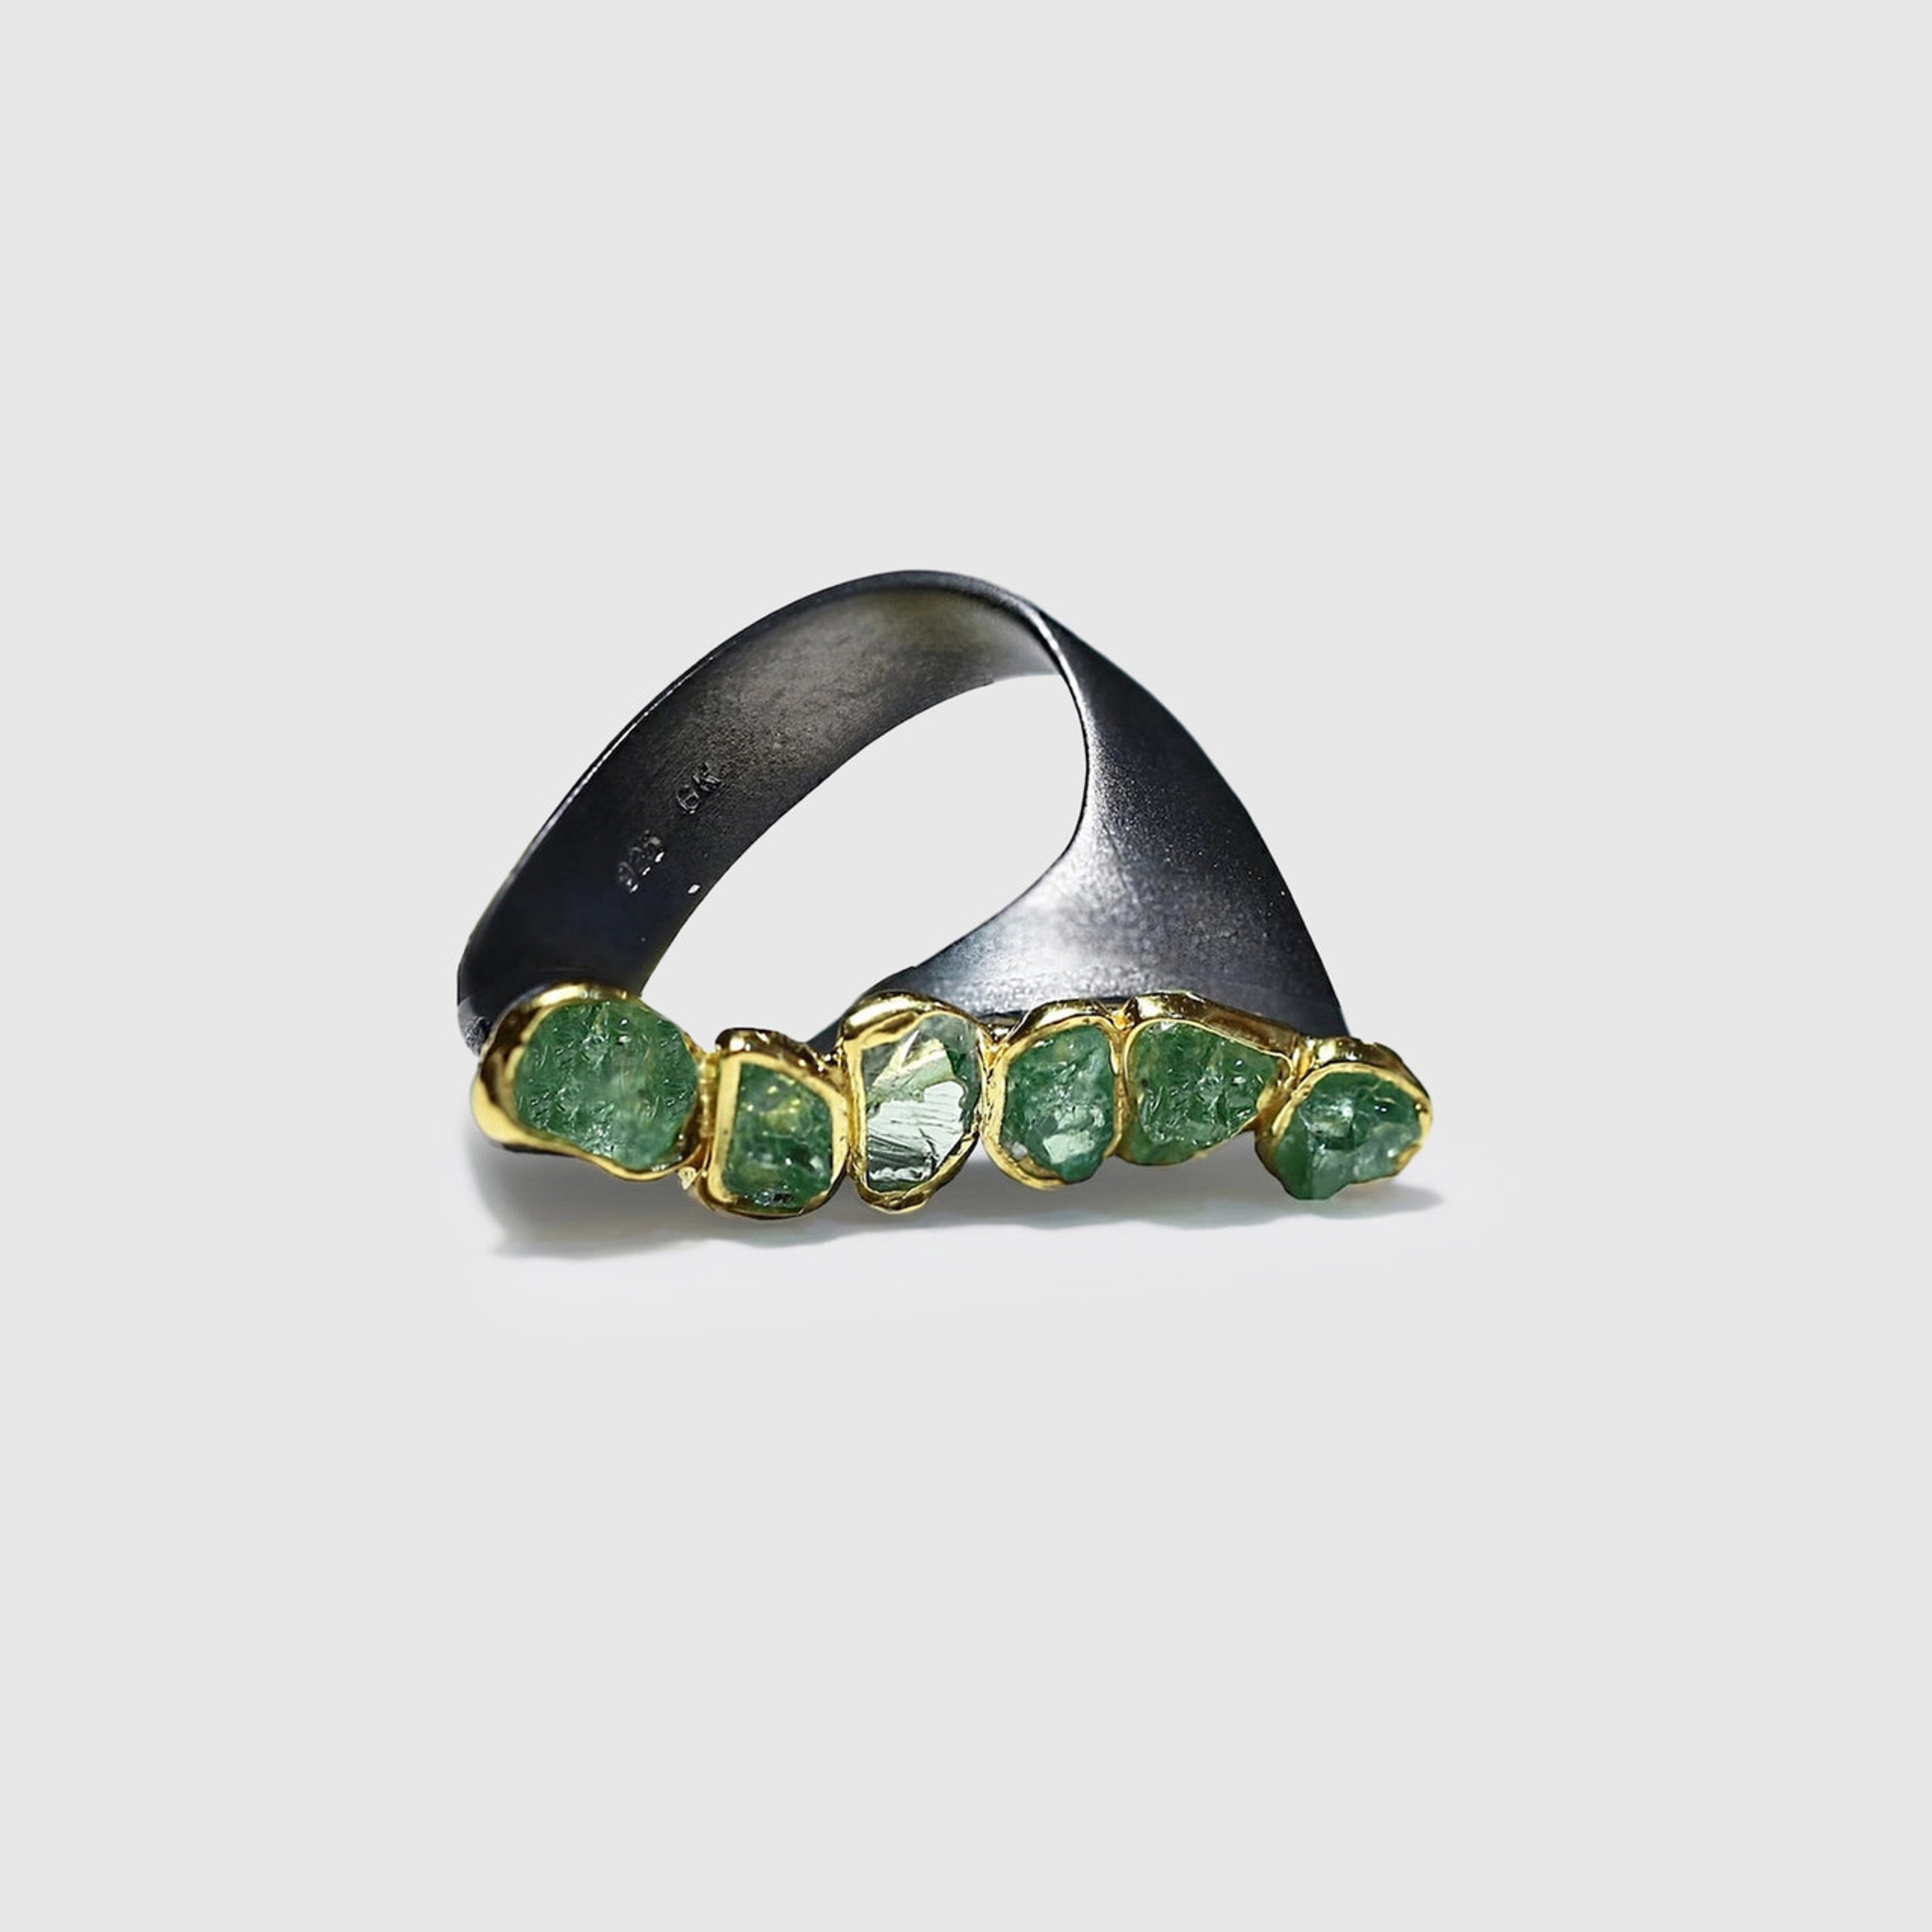 German Kabirski Clia Tsavorite Rough Ring , Jewelry by German Kabirski | elk & HAMMER Gallery